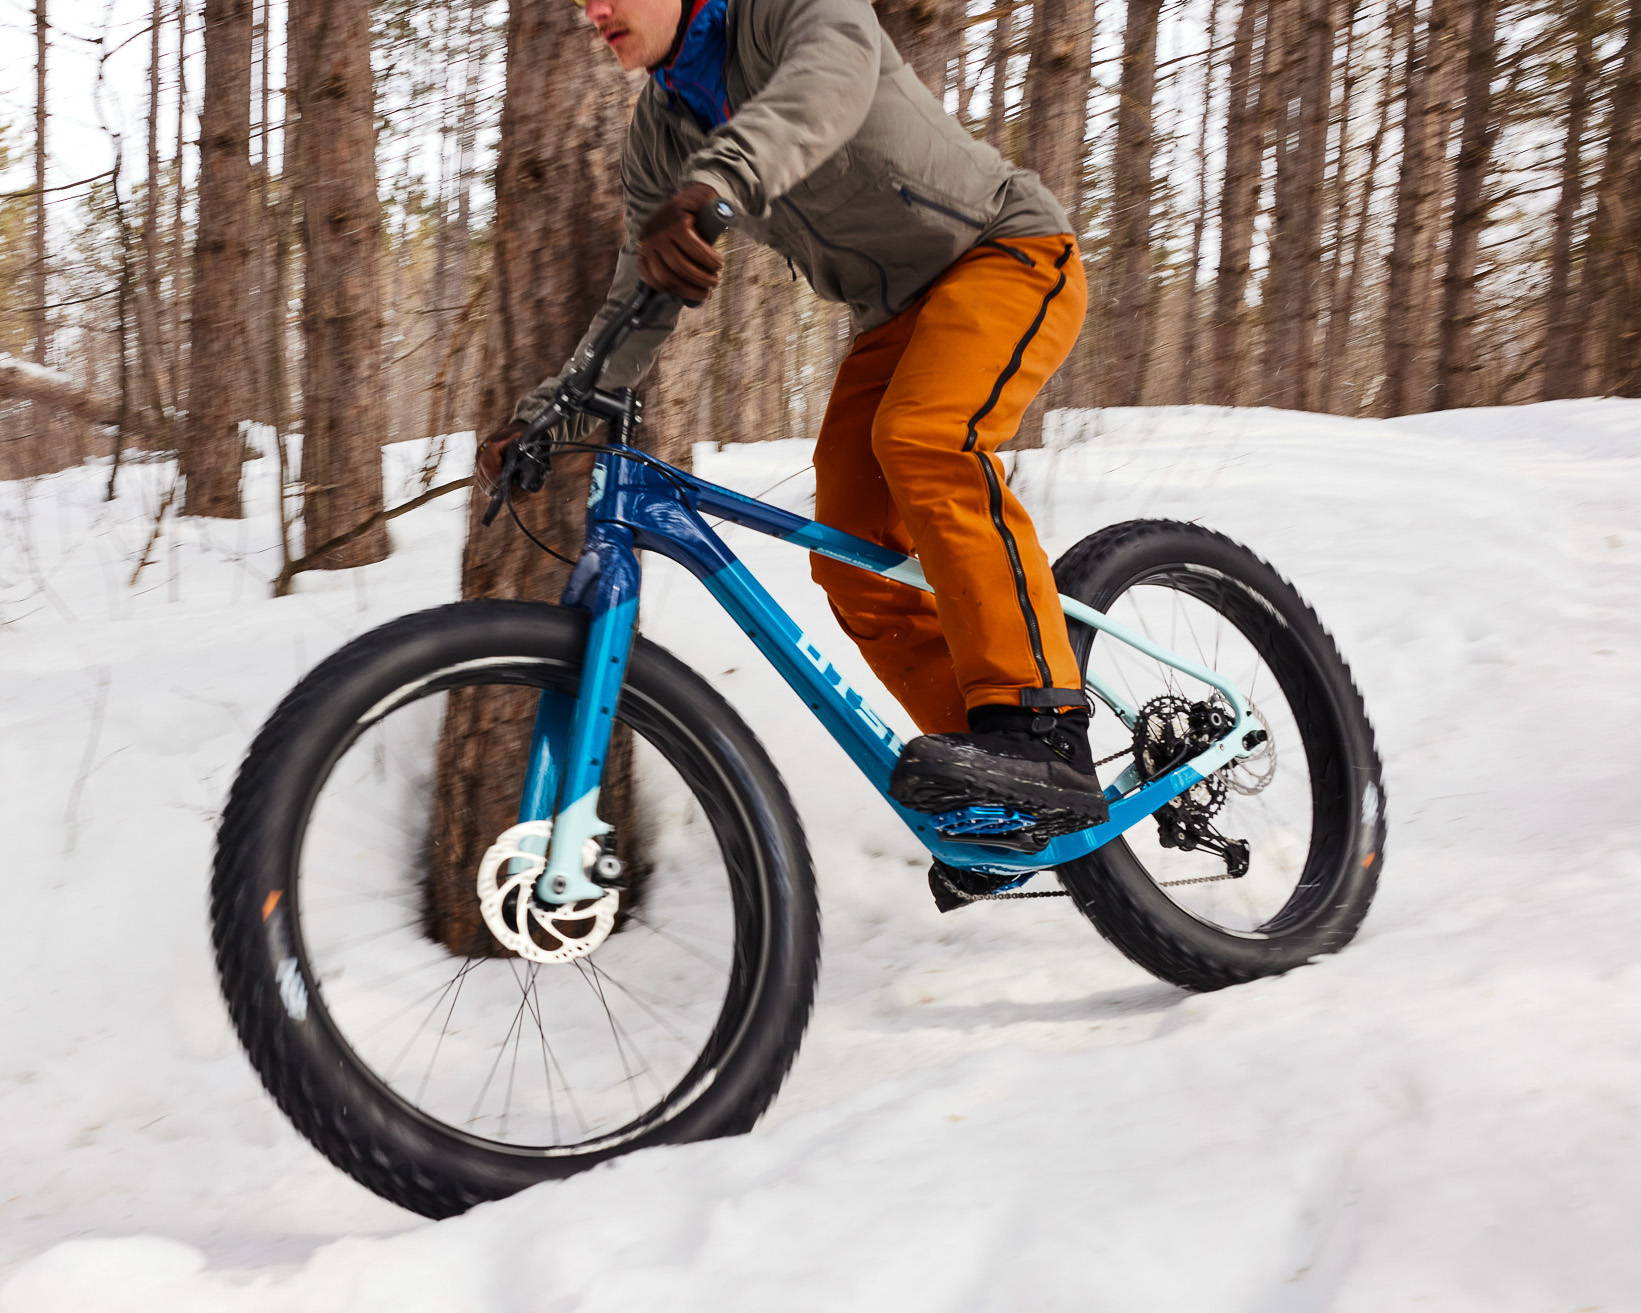 Blue Otso Voytek 2 fat bike being ridden on snow in the woods.